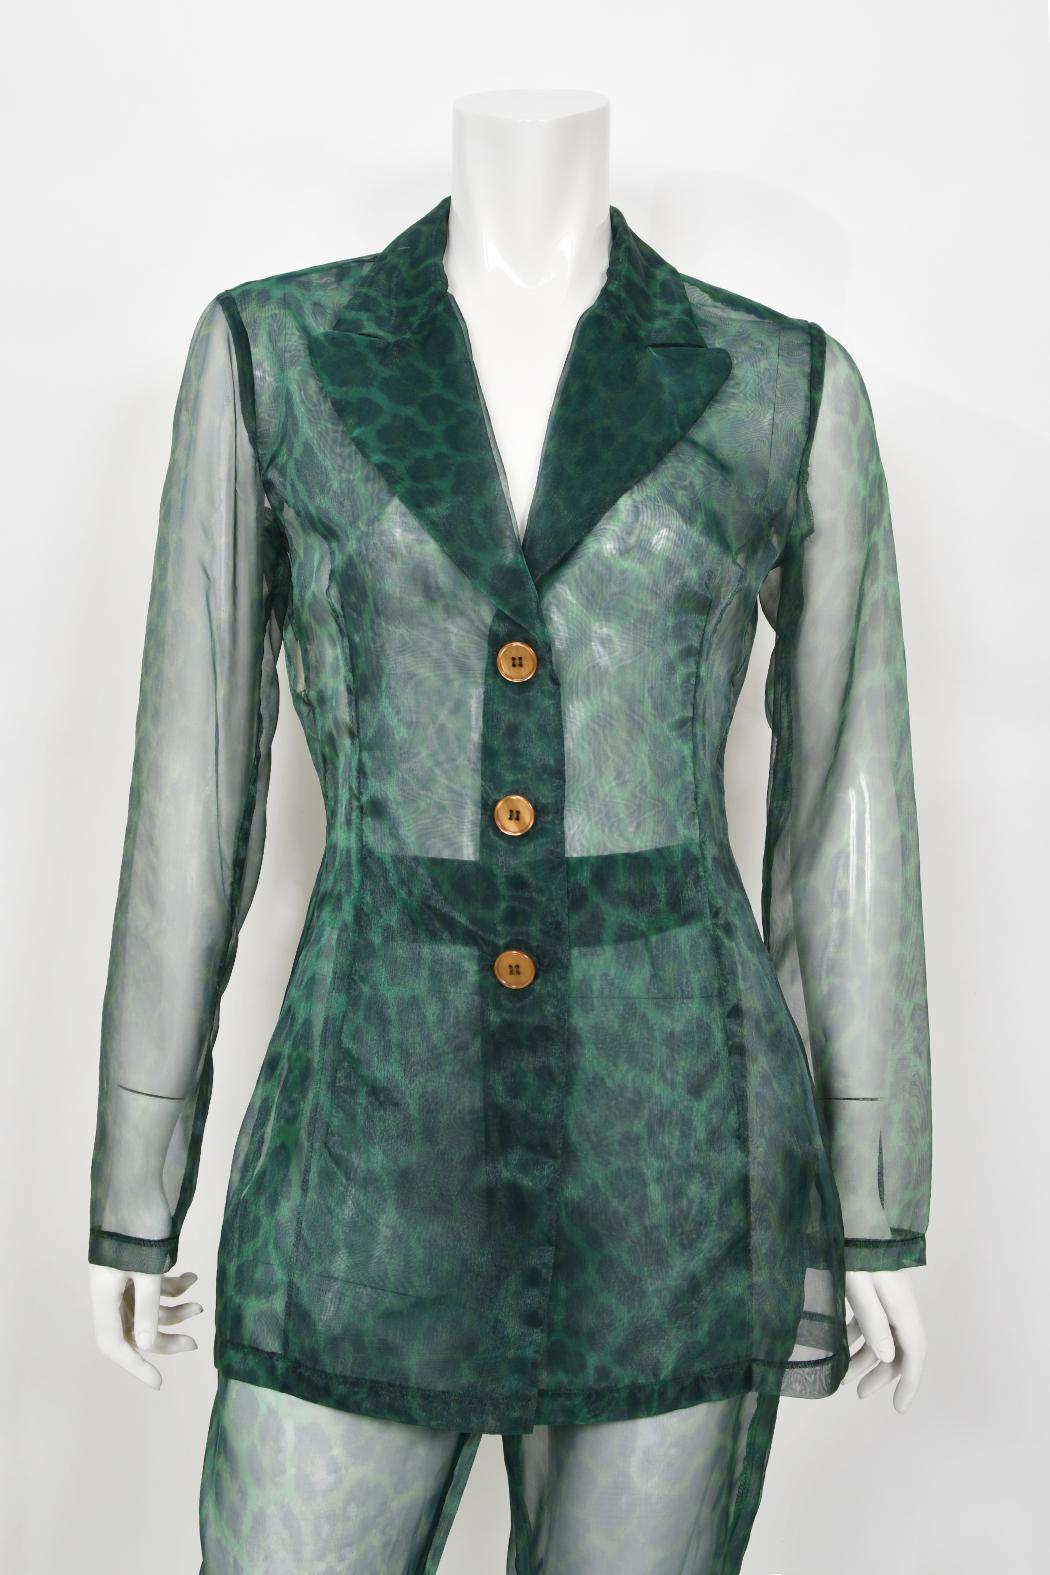 Ein sehr seltener und unglaublich schöner Hosenanzug von Rifat Ozbek mit grünem Leopardenmuster aus seiner Frühjahr-Sommer-Kollektion 1995. Rifat Ozbek ist ein türkischer Modedesigner, der an der Liverpool School of Architecture studierte und 1972